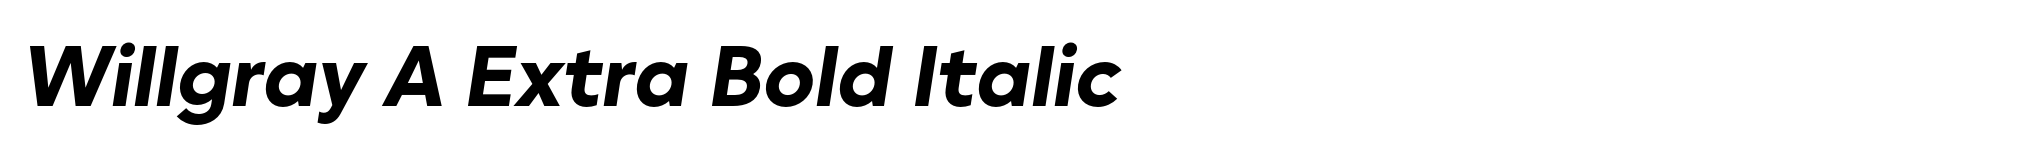 Willgray A Extra Bold Italic image